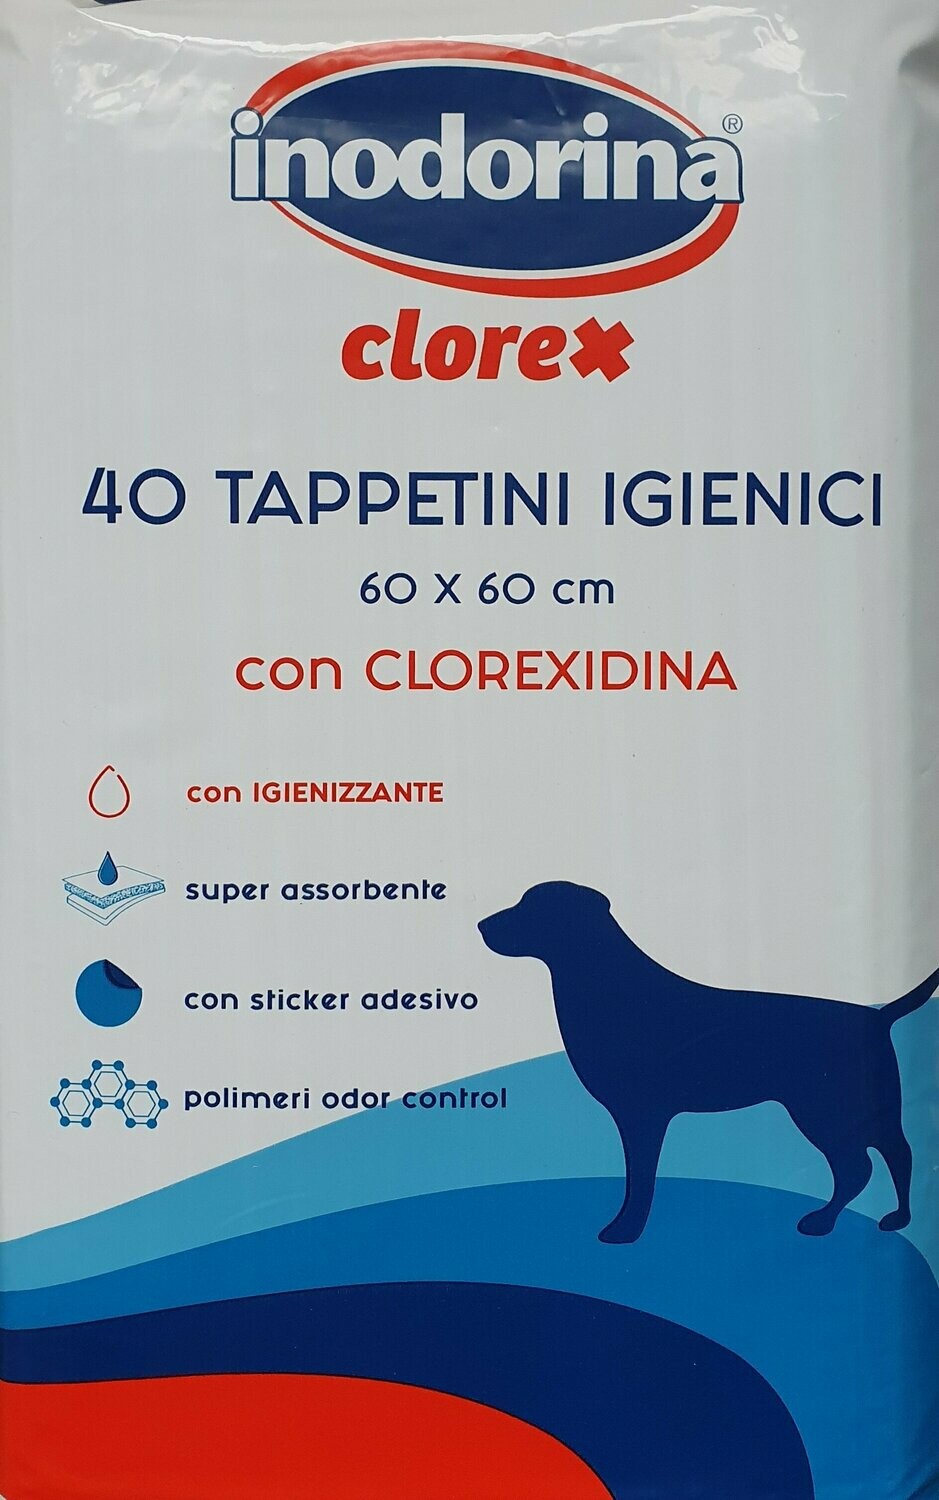 Inodorina Clorex Tappetino Igienico con Clorexidina 40 pz 60x60 cm - con  sticker adesivo